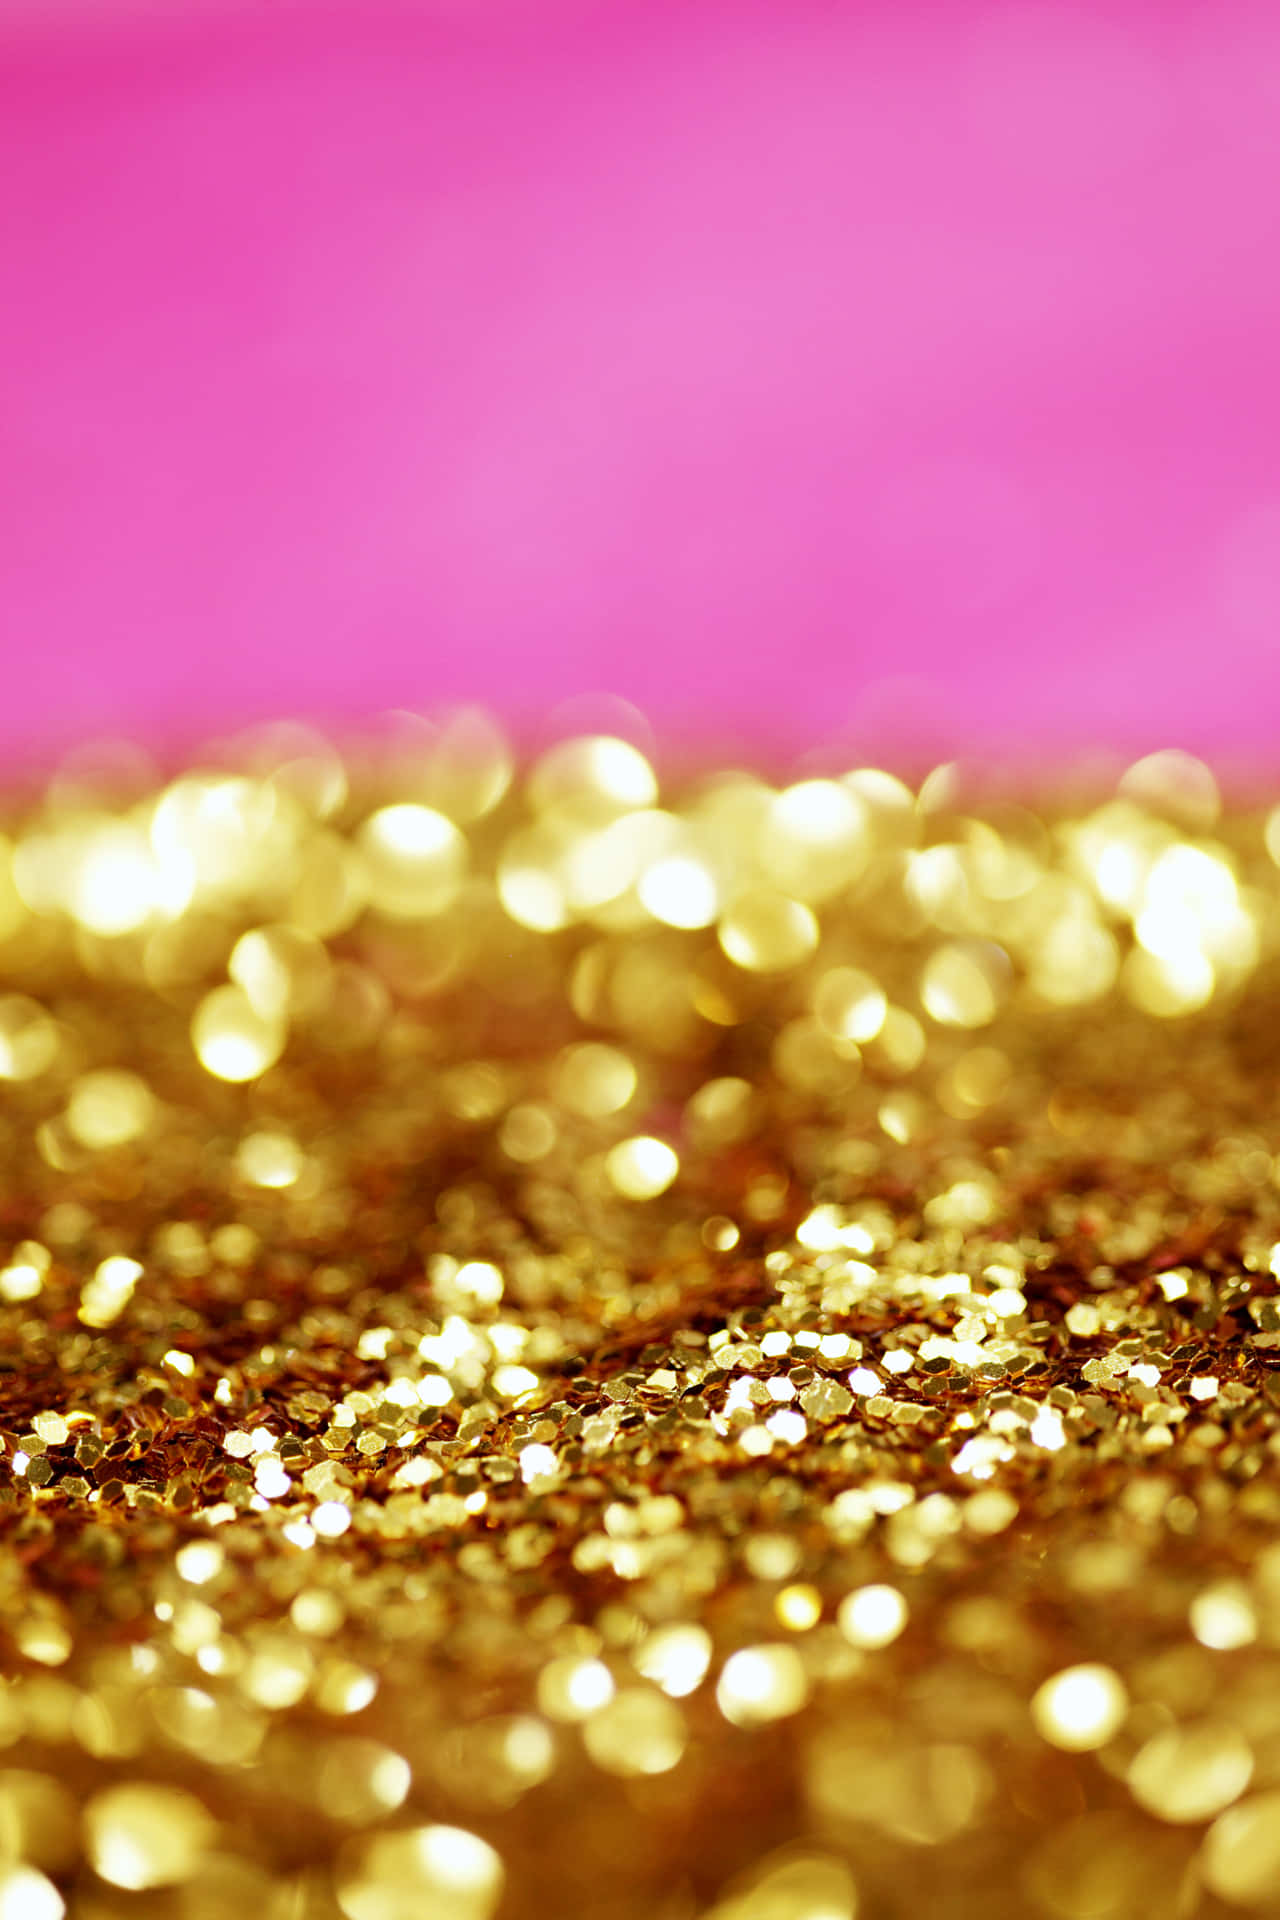 Eleganzdefiniert Durch Eine Unerwartete Kombination Von Pink Und Gold. Wallpaper